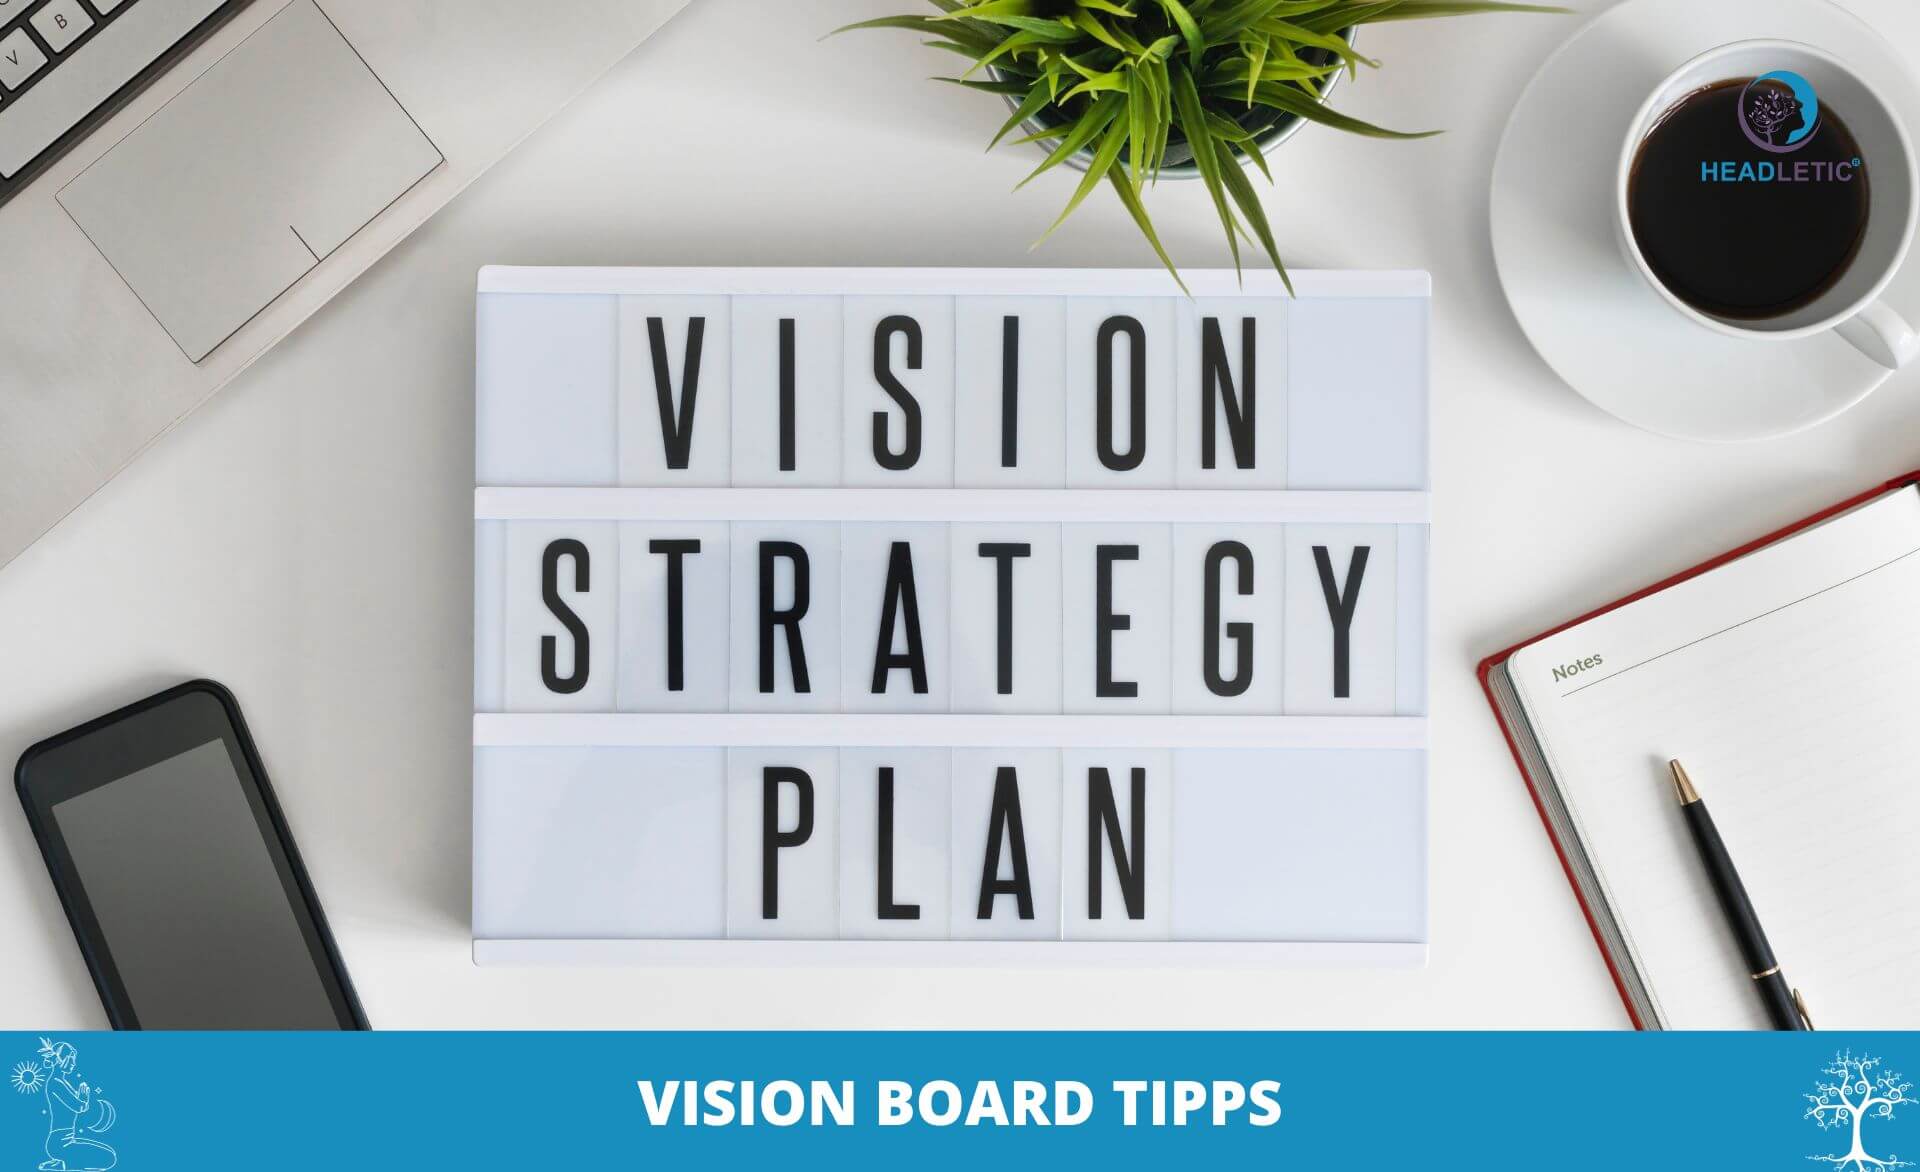 Vision-Strategieplan und Vision-Board-Tipps.